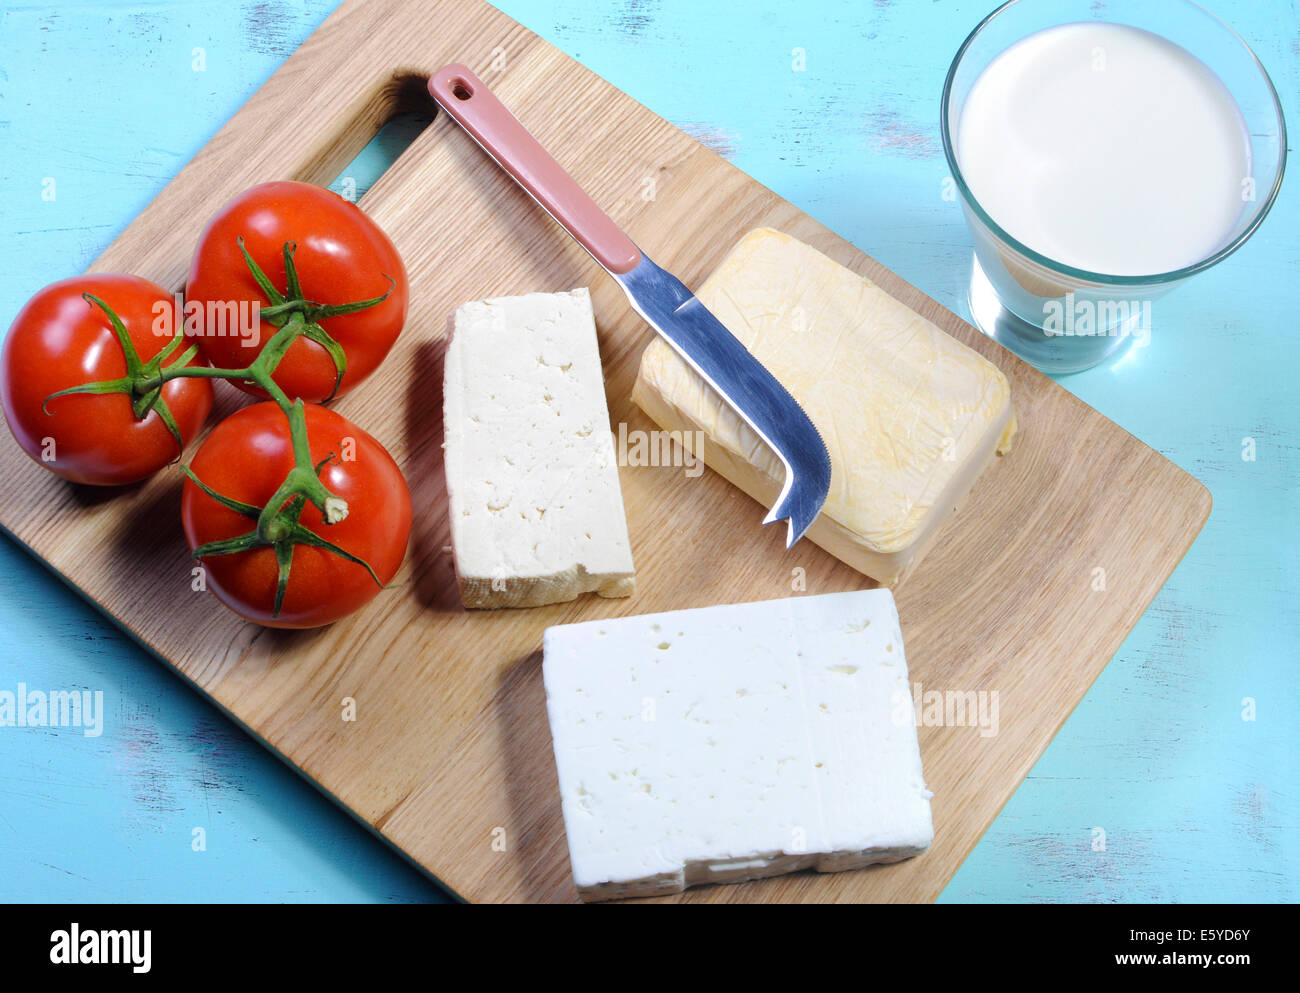 Gesunde Ernährung gesunde Ernährung Lebensmittelgruppe, freie Milchprodukte mit Sojamilch, Tofu, Soja-Käse und Ziegenkäse - Antenne Stockfoto